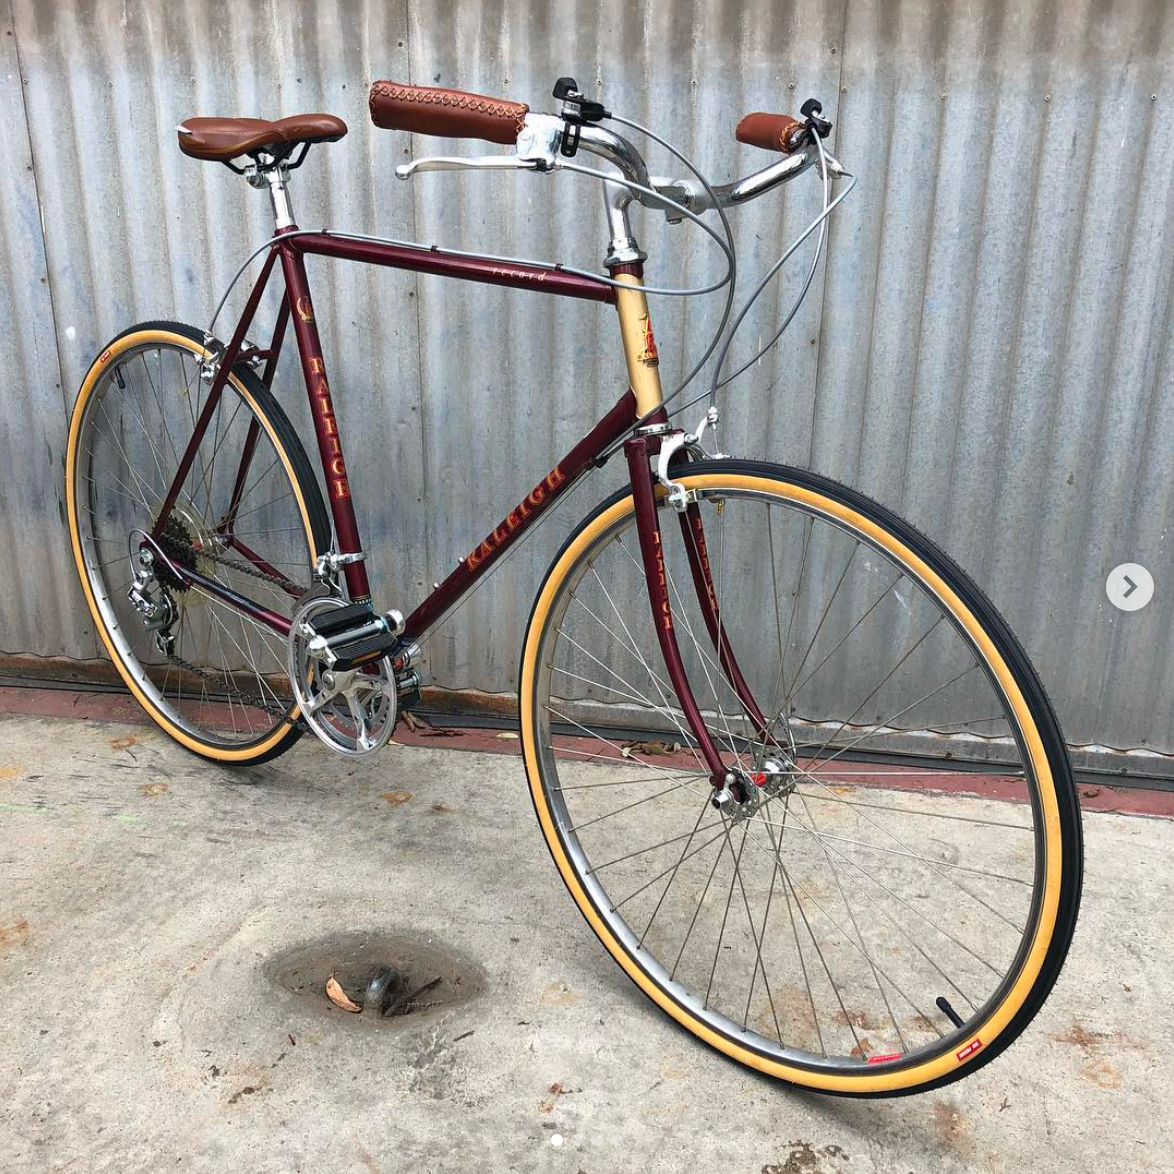 Raleigh Record Road Bike Reborn as Vintage City Bike